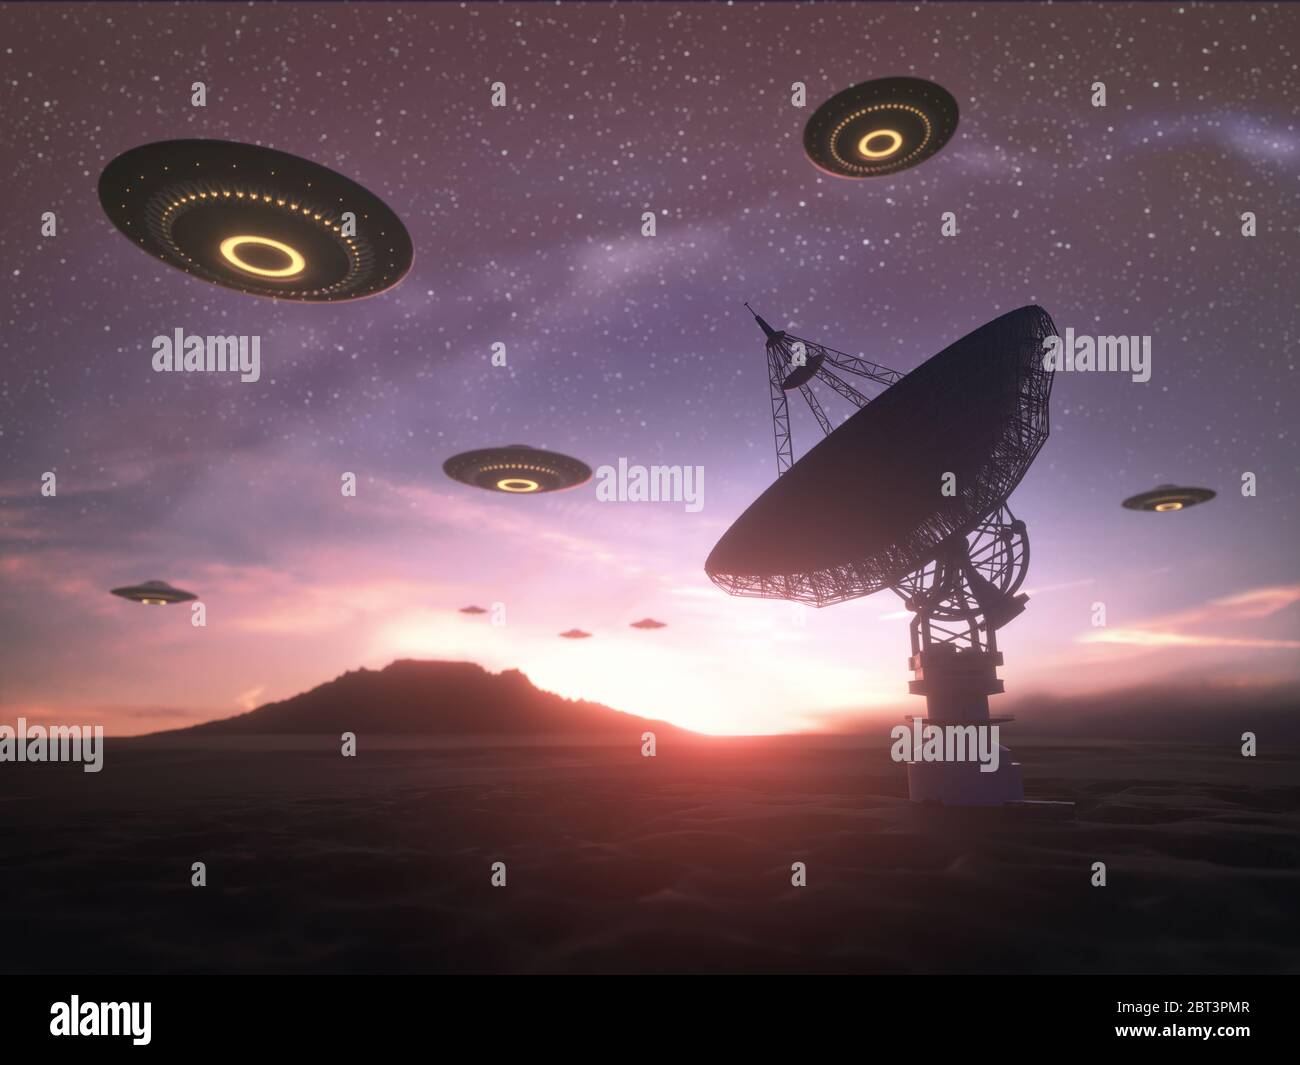 Alien Invasion, Illustration. Schwarm von nicht identifizierten Flugobjekten (UFOs) über einer Satellitenschüssel. Stockfoto